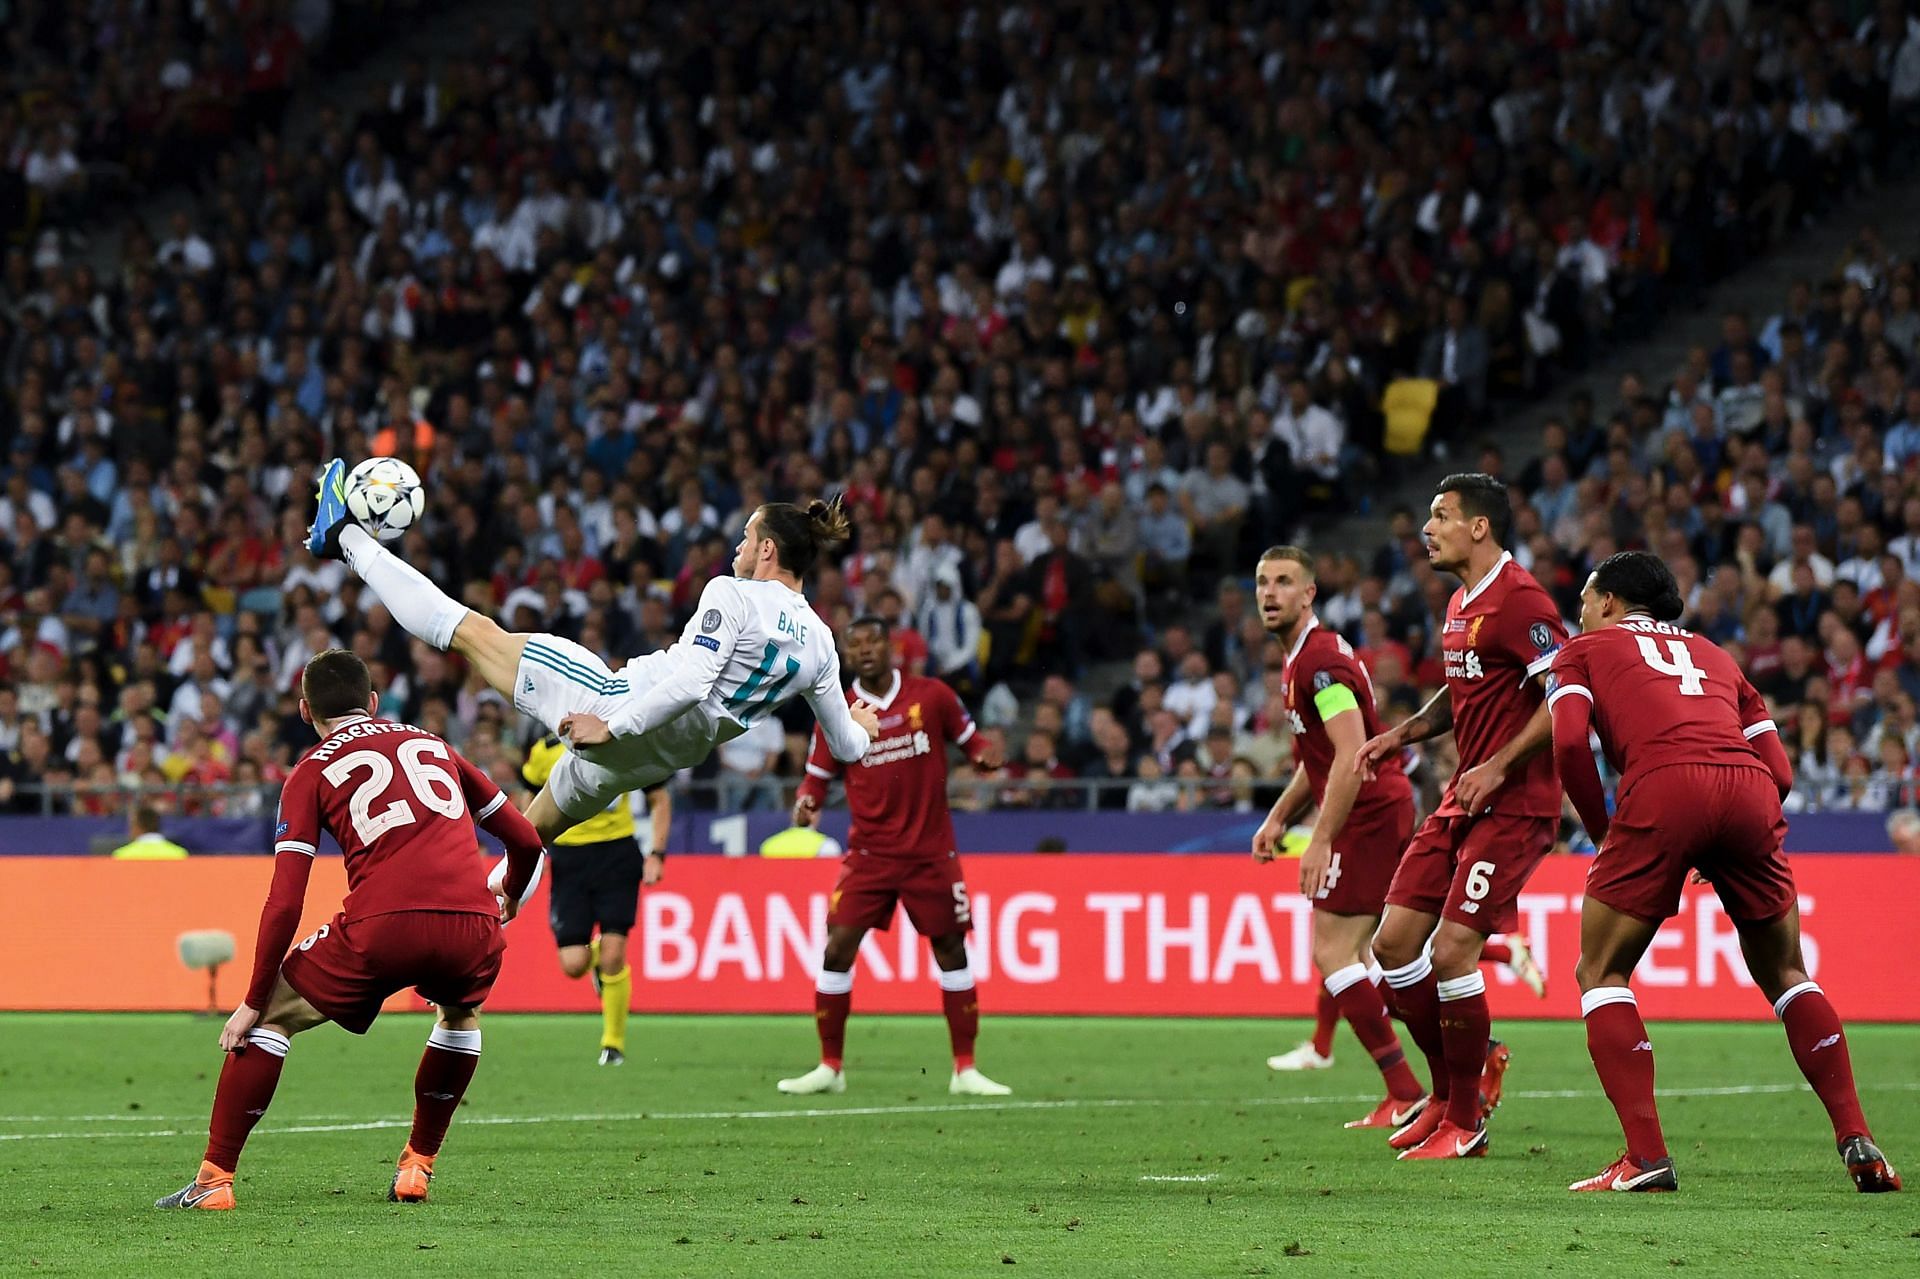 La espectacular chilena de Gareth Bale pone al Real Madrid por delante del Liverpool en la final de la UEFA Champions League 2018